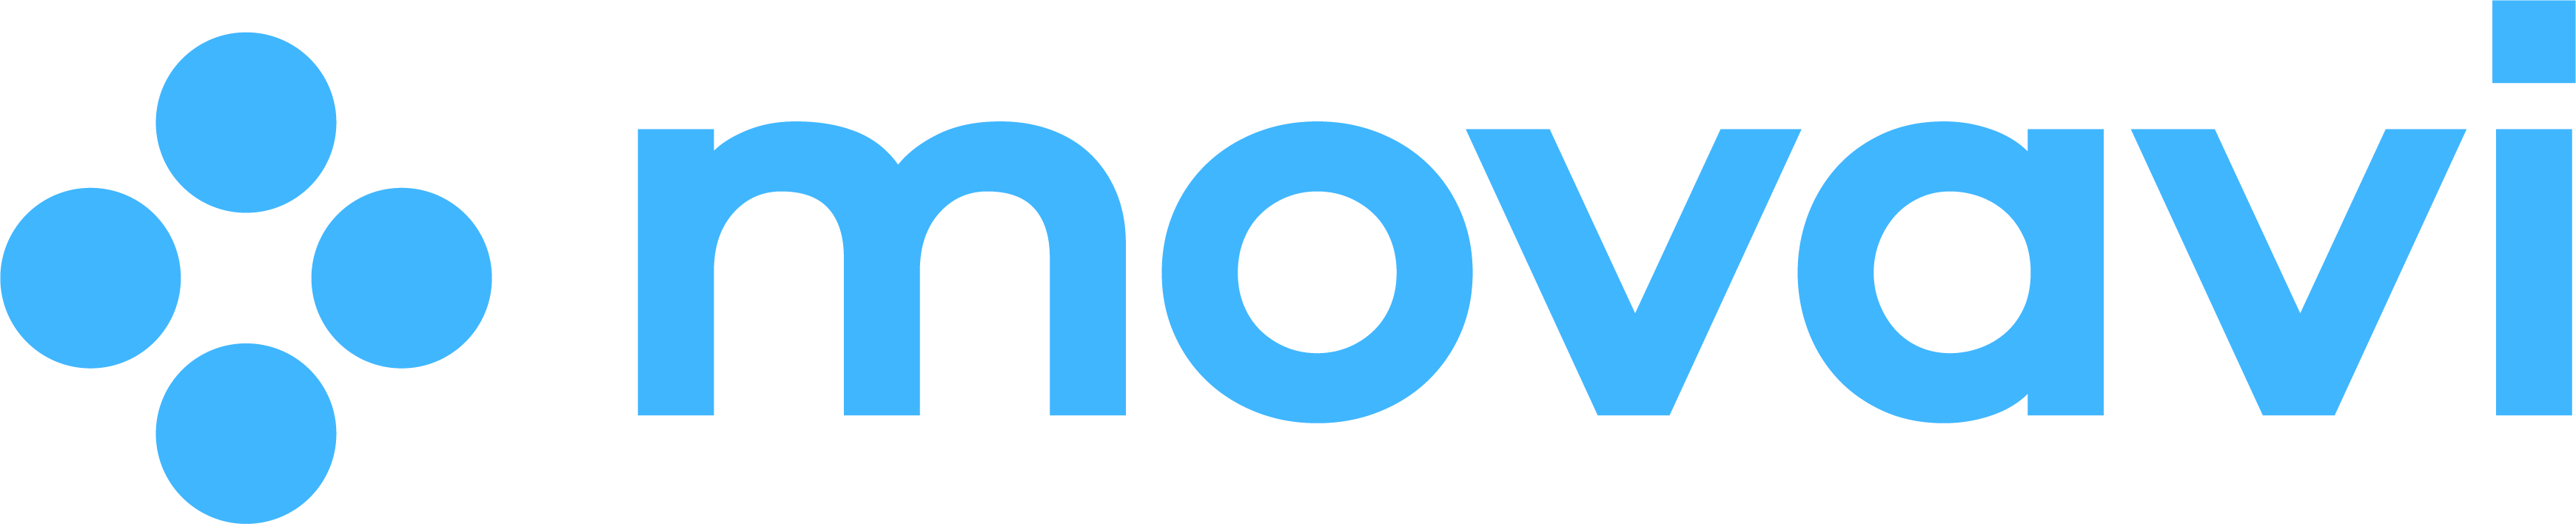 Лицензия Movavi Picverse 1, Russian для Mac на 12 месяцев для образовательных организаций, подписка (MP1MUZY) - фото 1